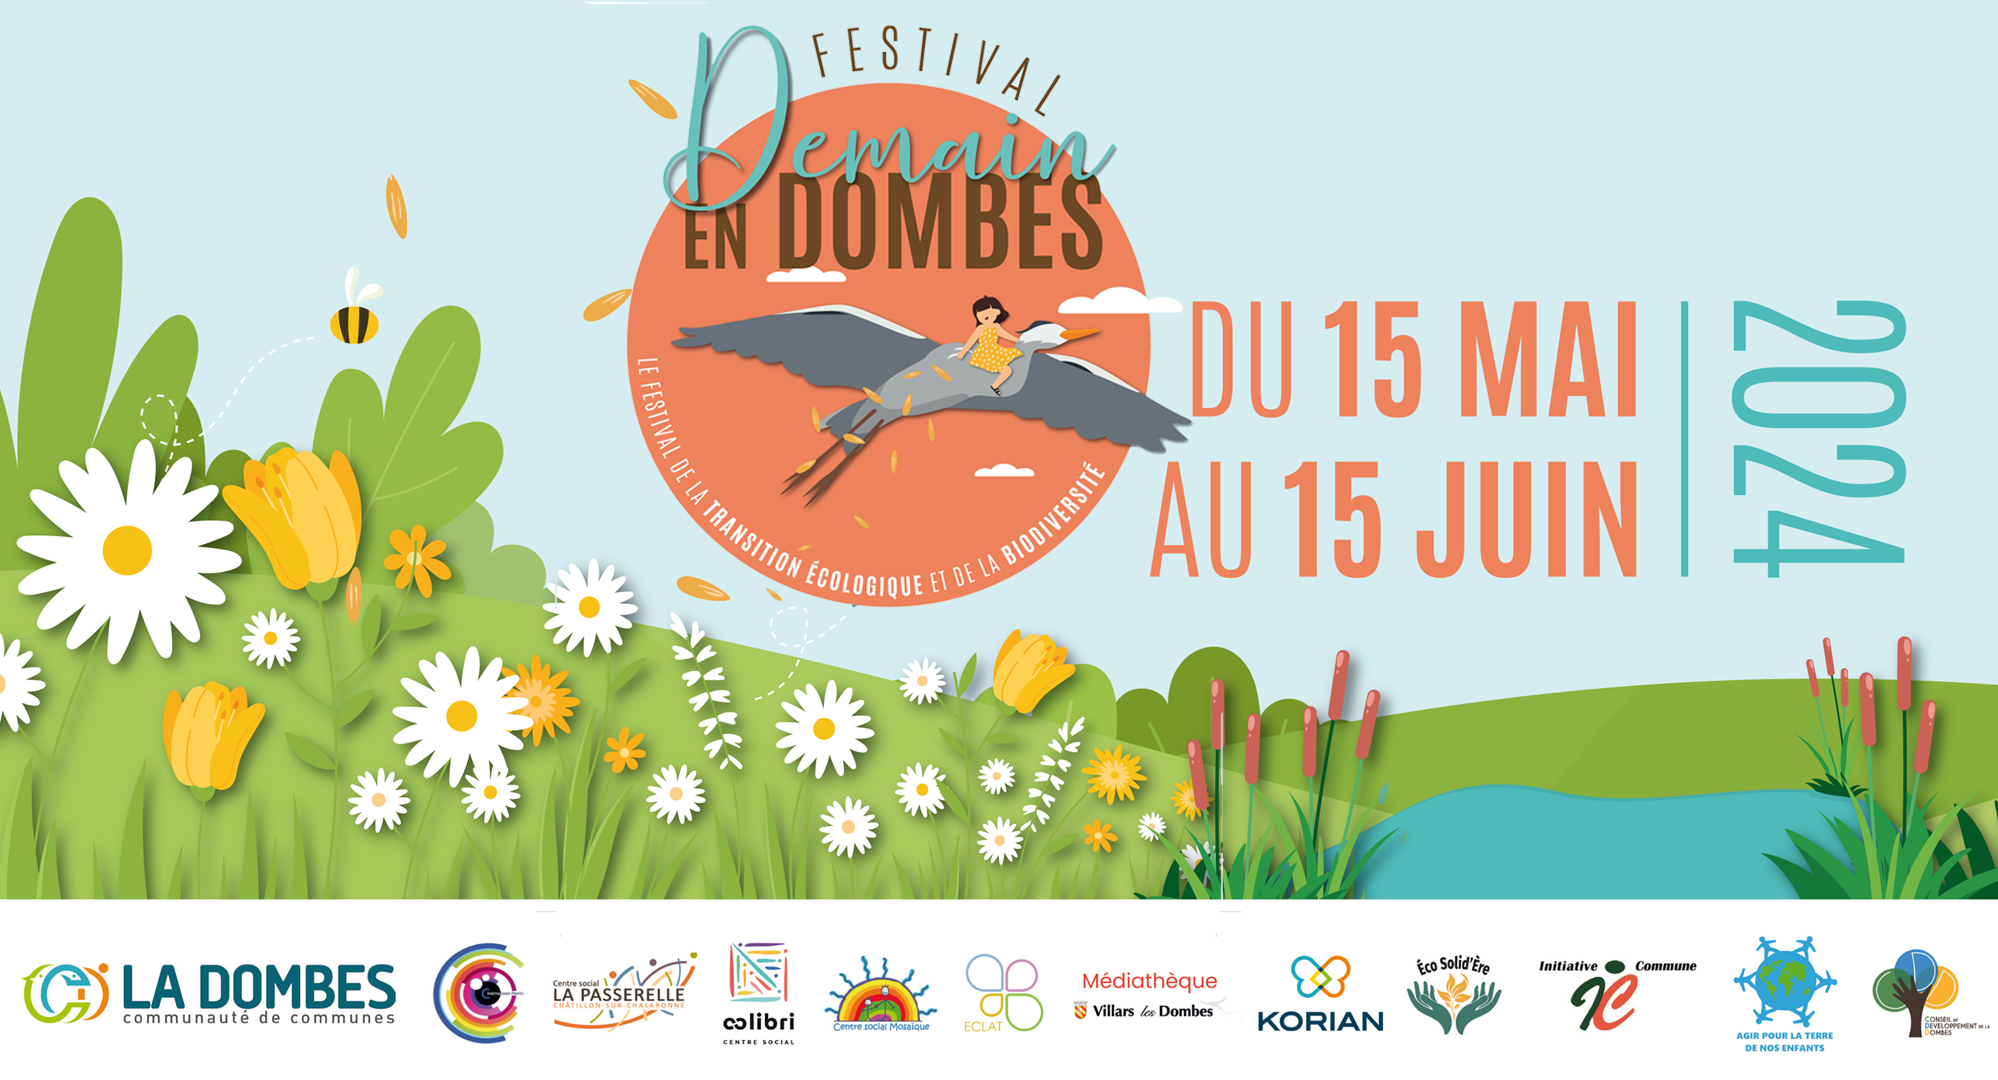 Festival Demain en Dombes – Découvrez le programme!